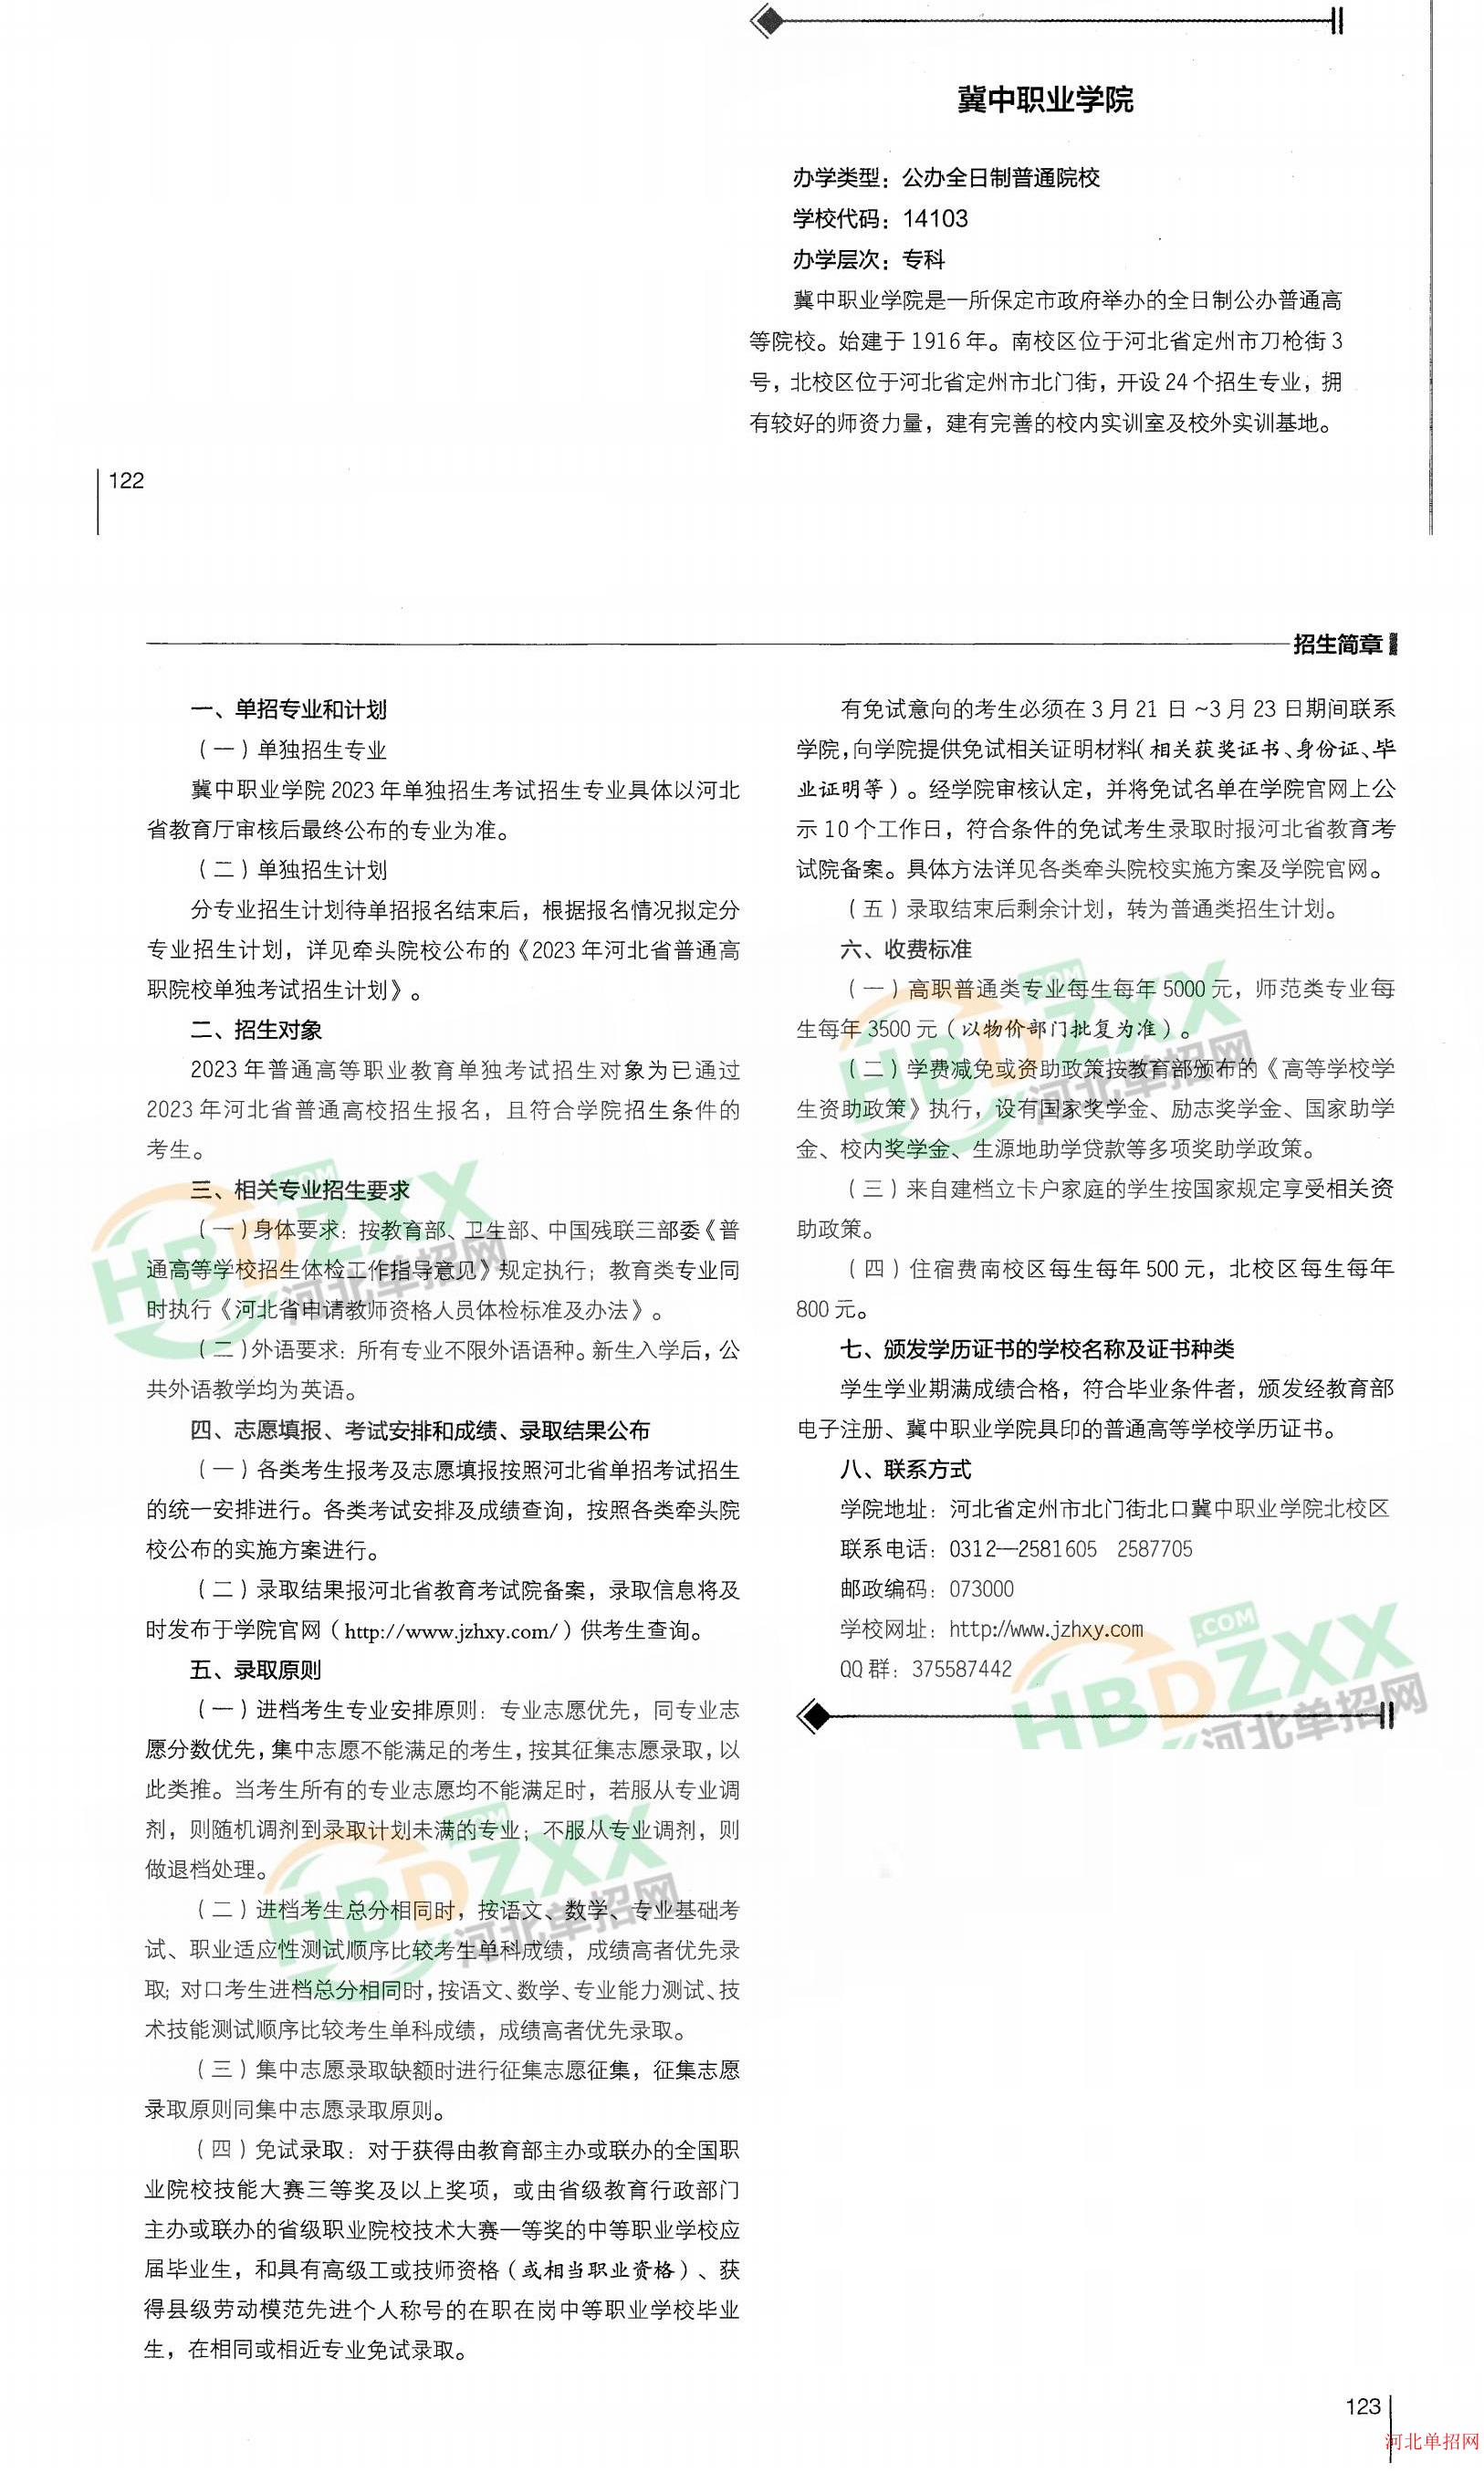 冀中职业学院2023年单招招生简章 图1